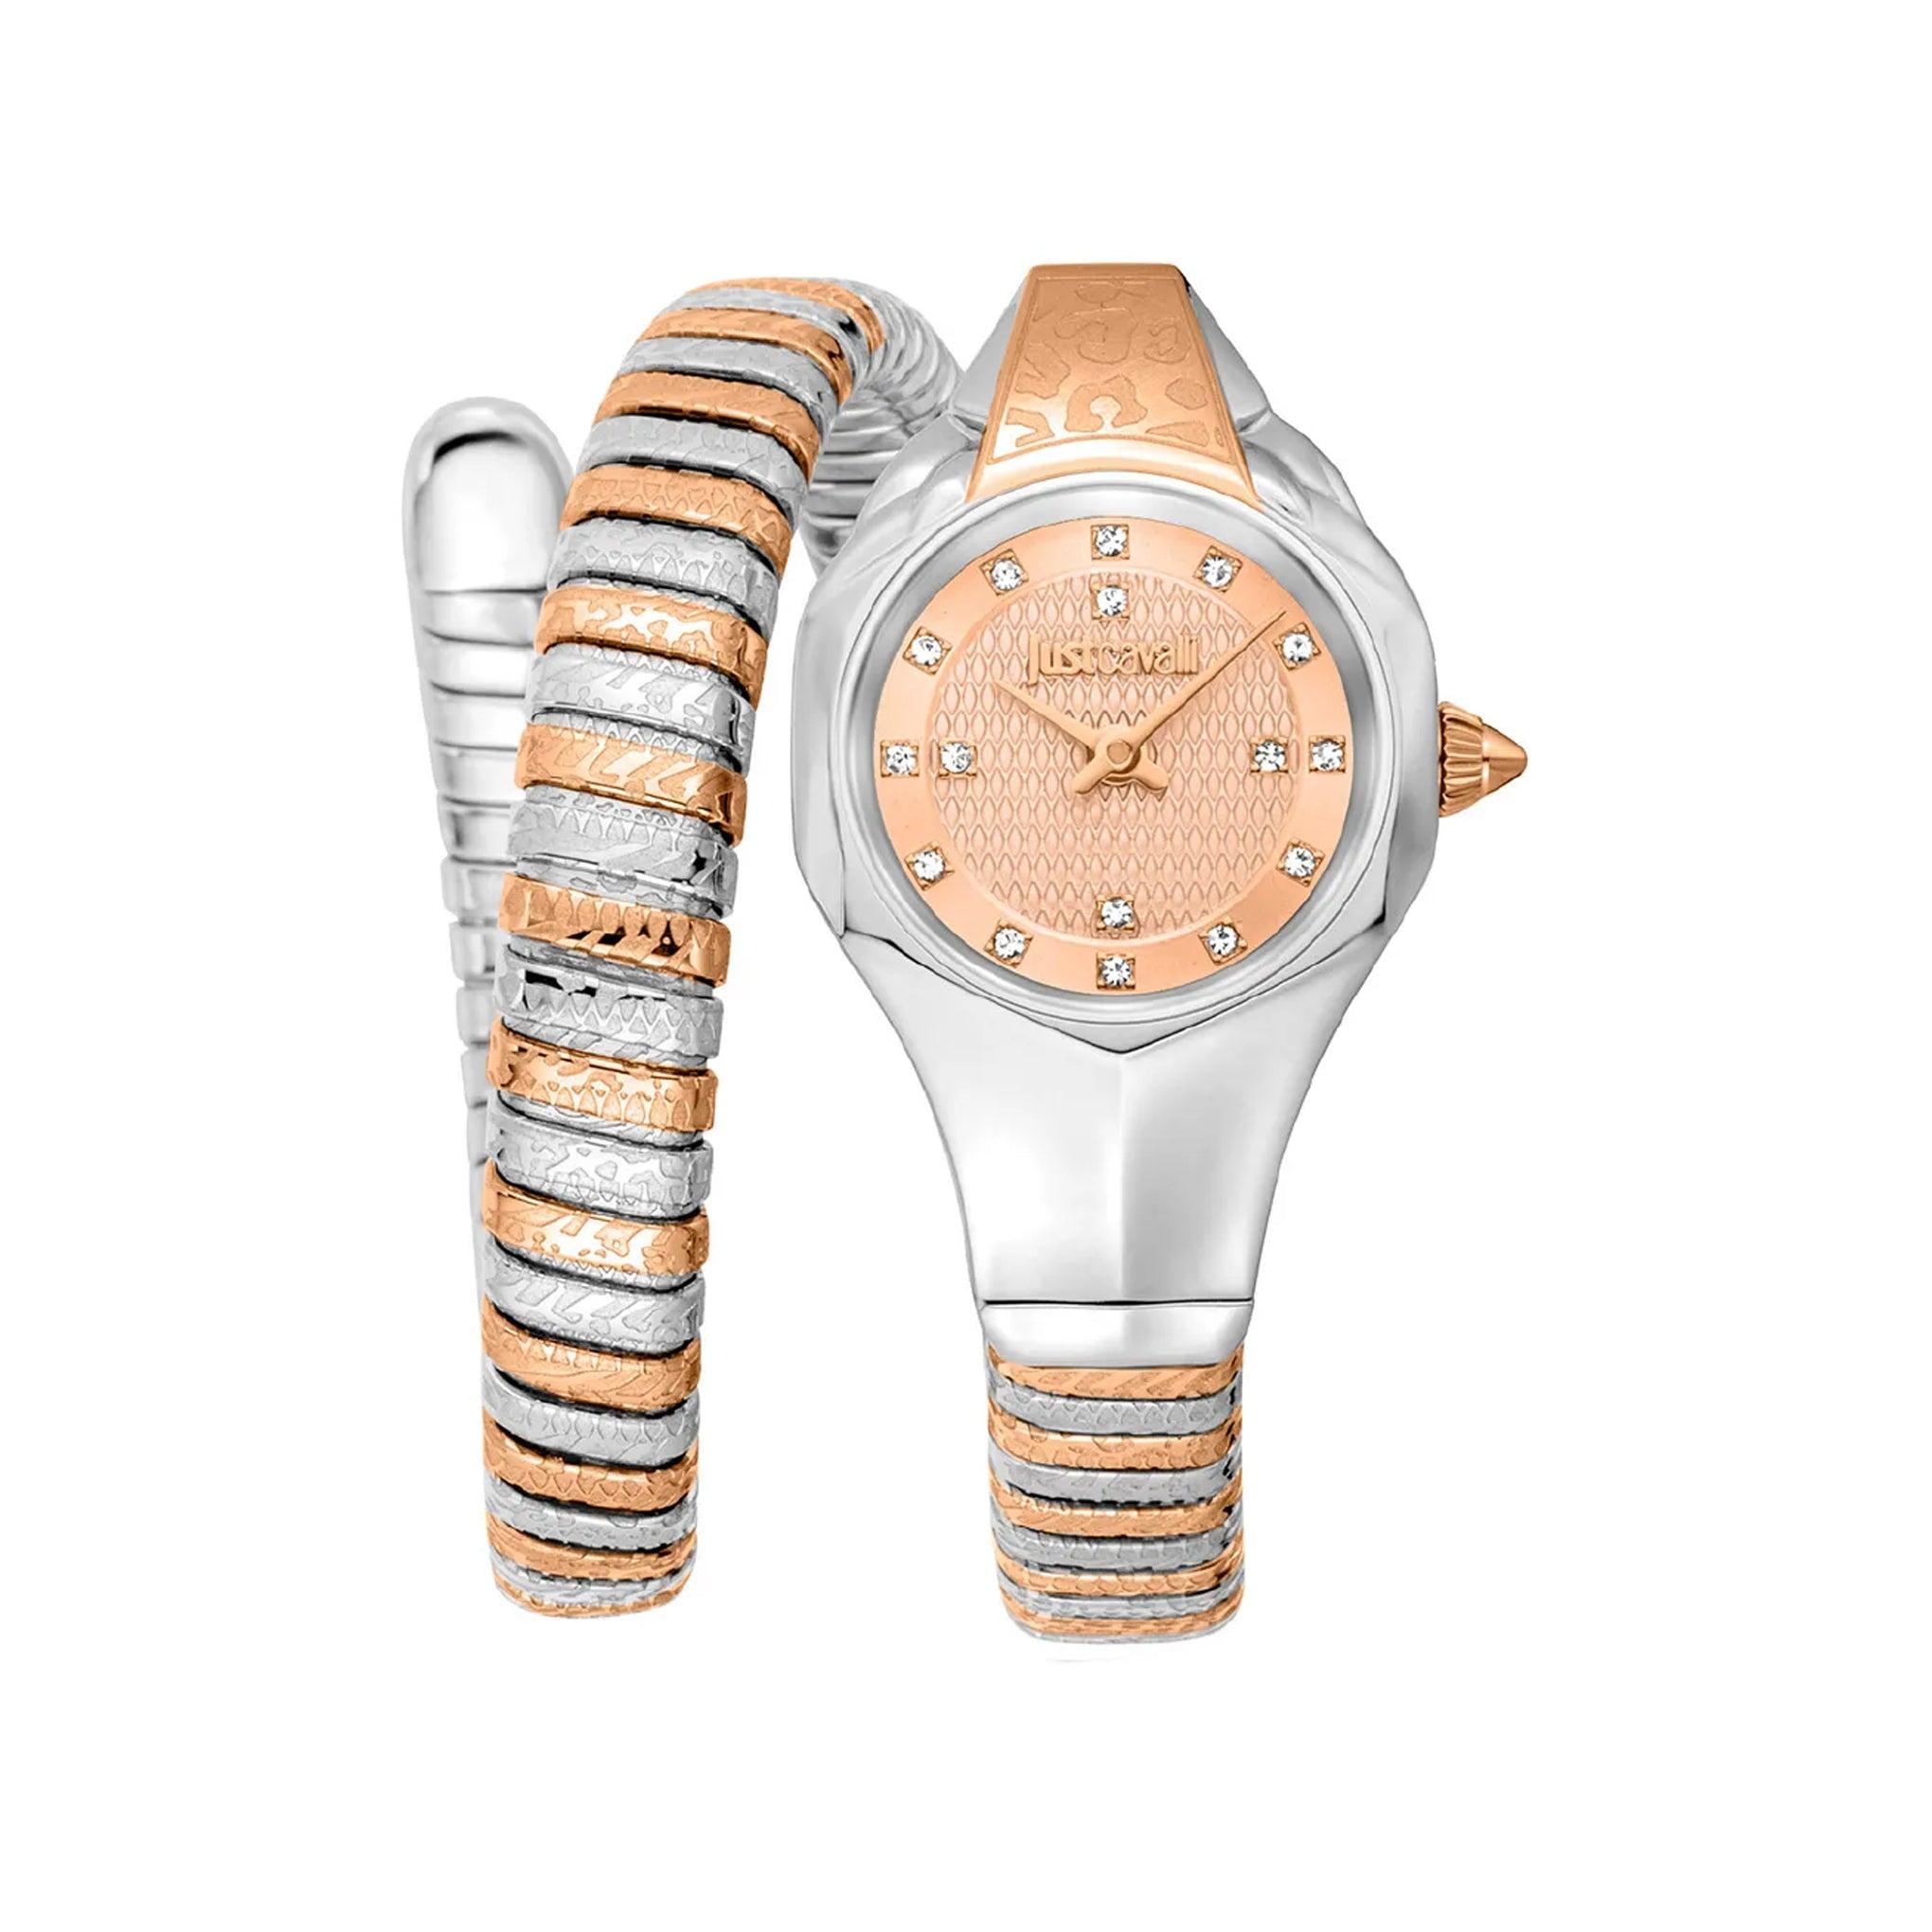 ساعة يد نسائية بشكل ثعبان - فضي و ذهبي وردي - بحزام معدني مقاوم للصدأ جست كافالي Just Cavalli Women's Amalfi Two Tones Rose Gold Stainless Steel Watch